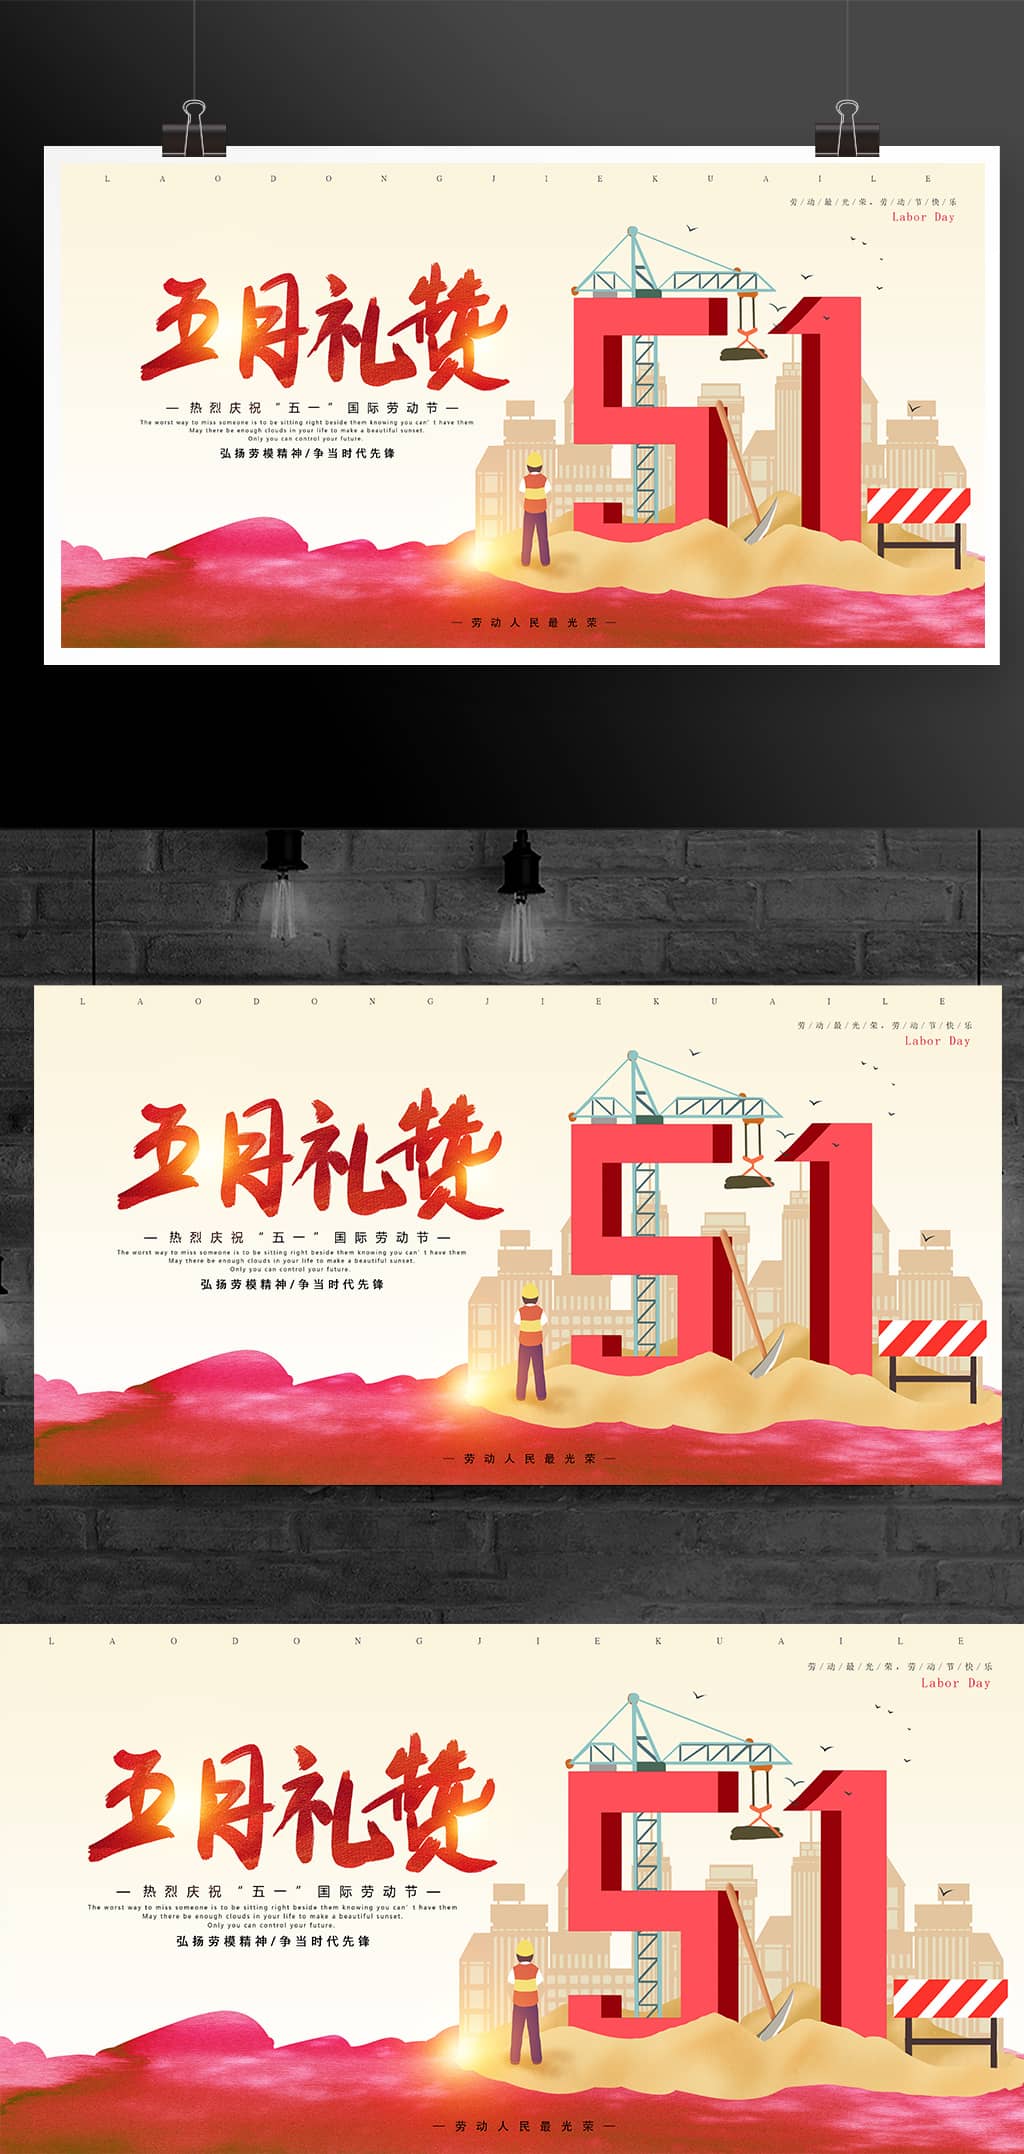 51劳动节宣传海报